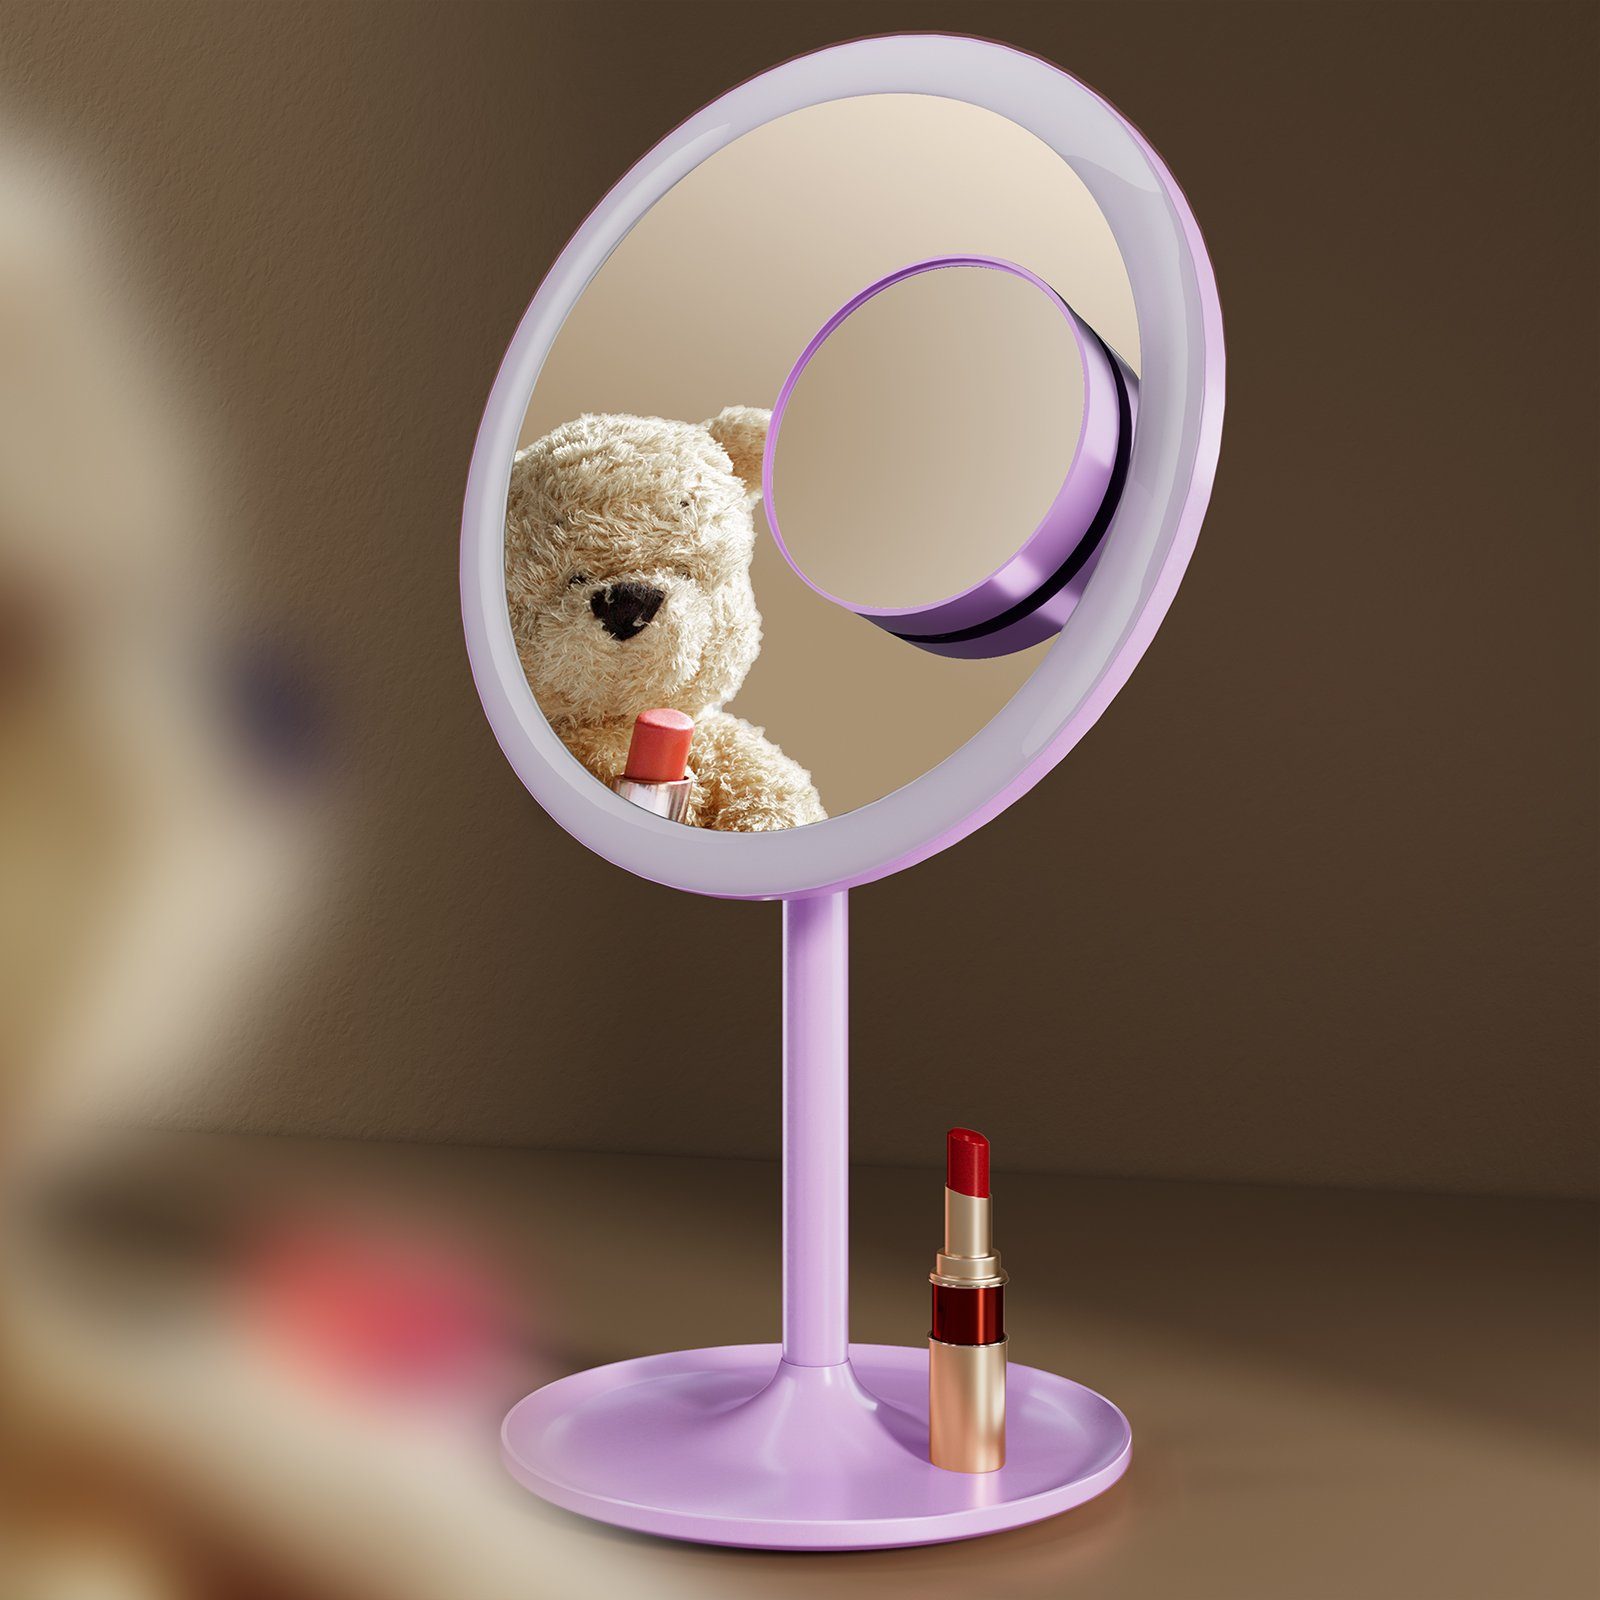 EMKE Kosmetikspiegel Macaron Tischspiegel mit Beleuchtung 3 Lichtfarben Dimmbar, 1X / 3X,90°Drehbar,USB Aufladbarer LED Schminkspiegel für Schminken Violett